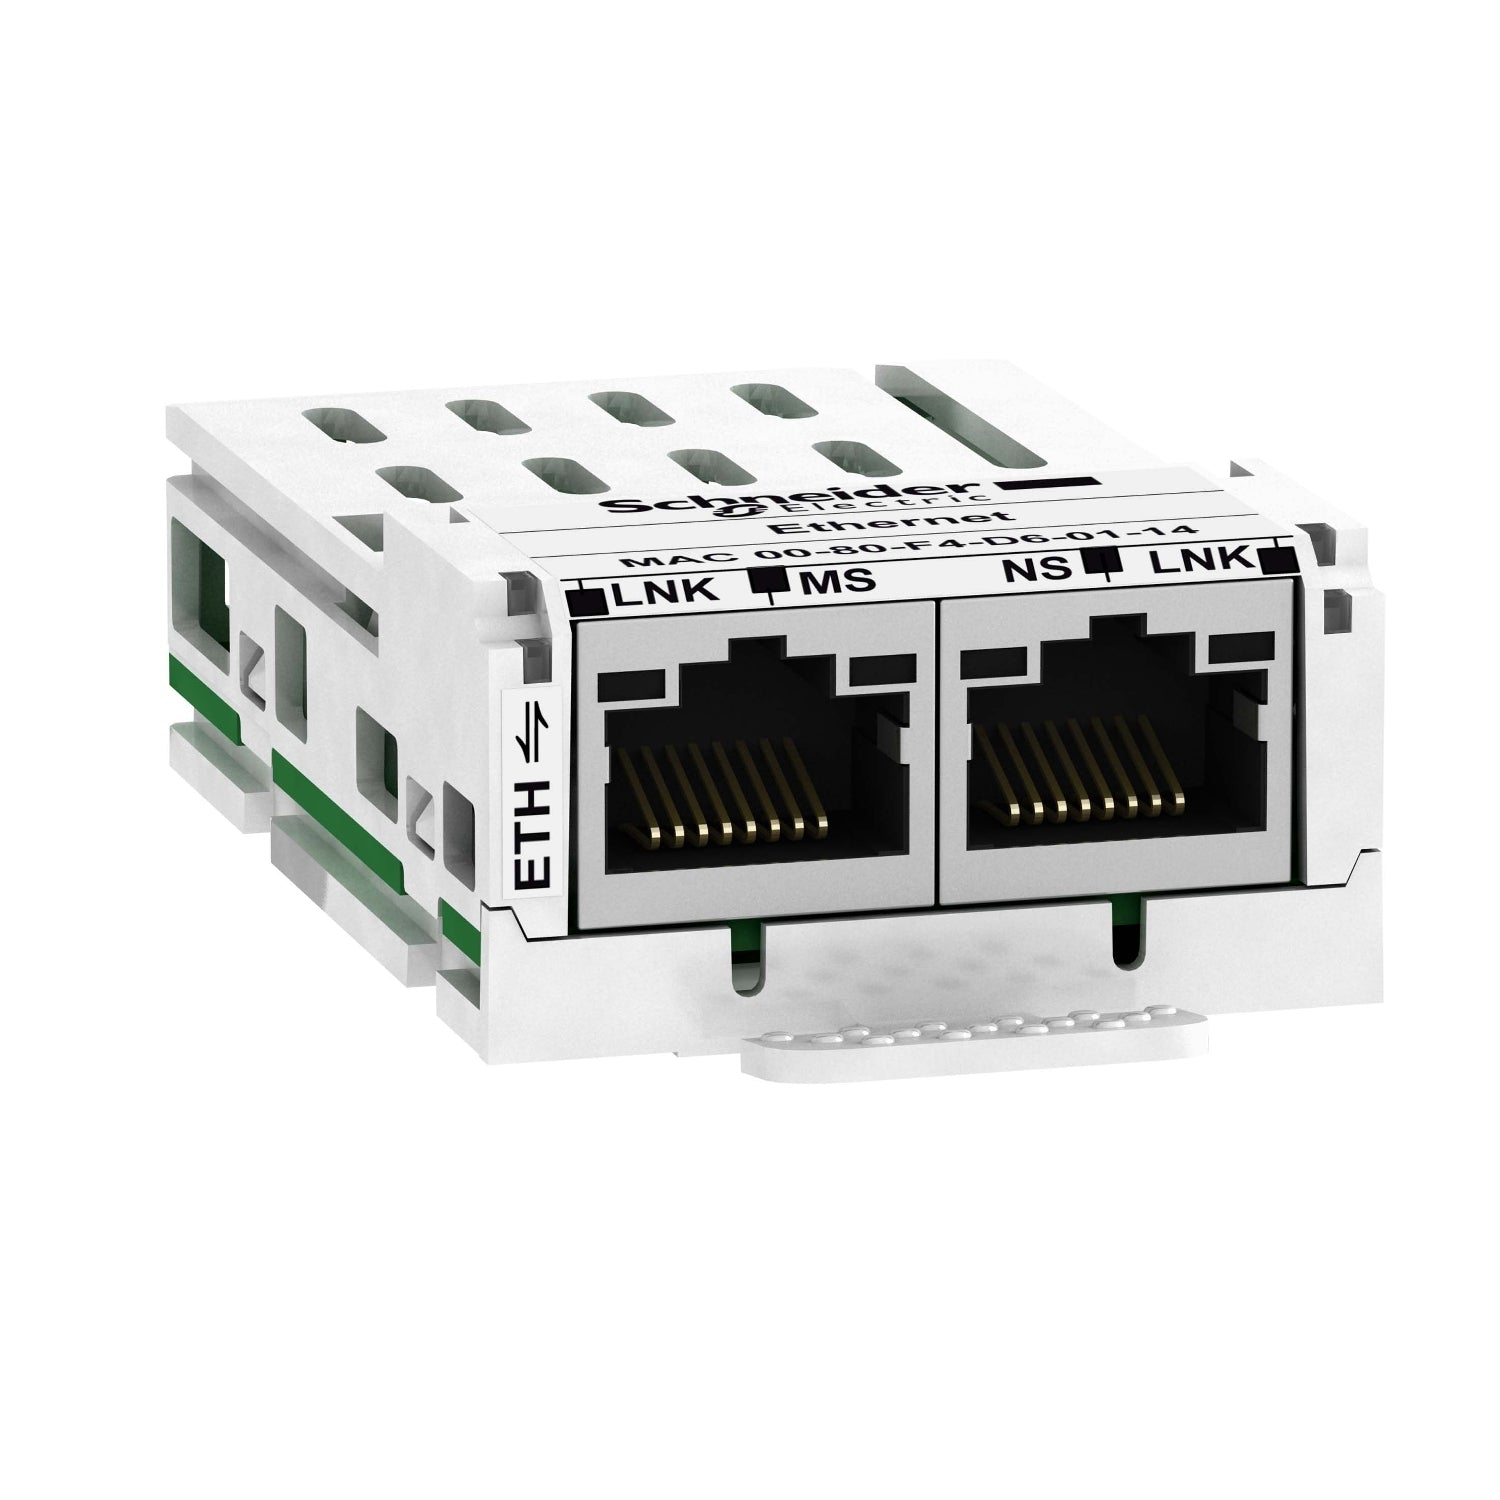 Módulo de Comunicación Modbus TCP y Ethernet/IP con 2 Conexiones RJ45. Accesorio para Variadores de Velocidad Altivar 320 de Marca Schneider Electric (VW3A3616). 